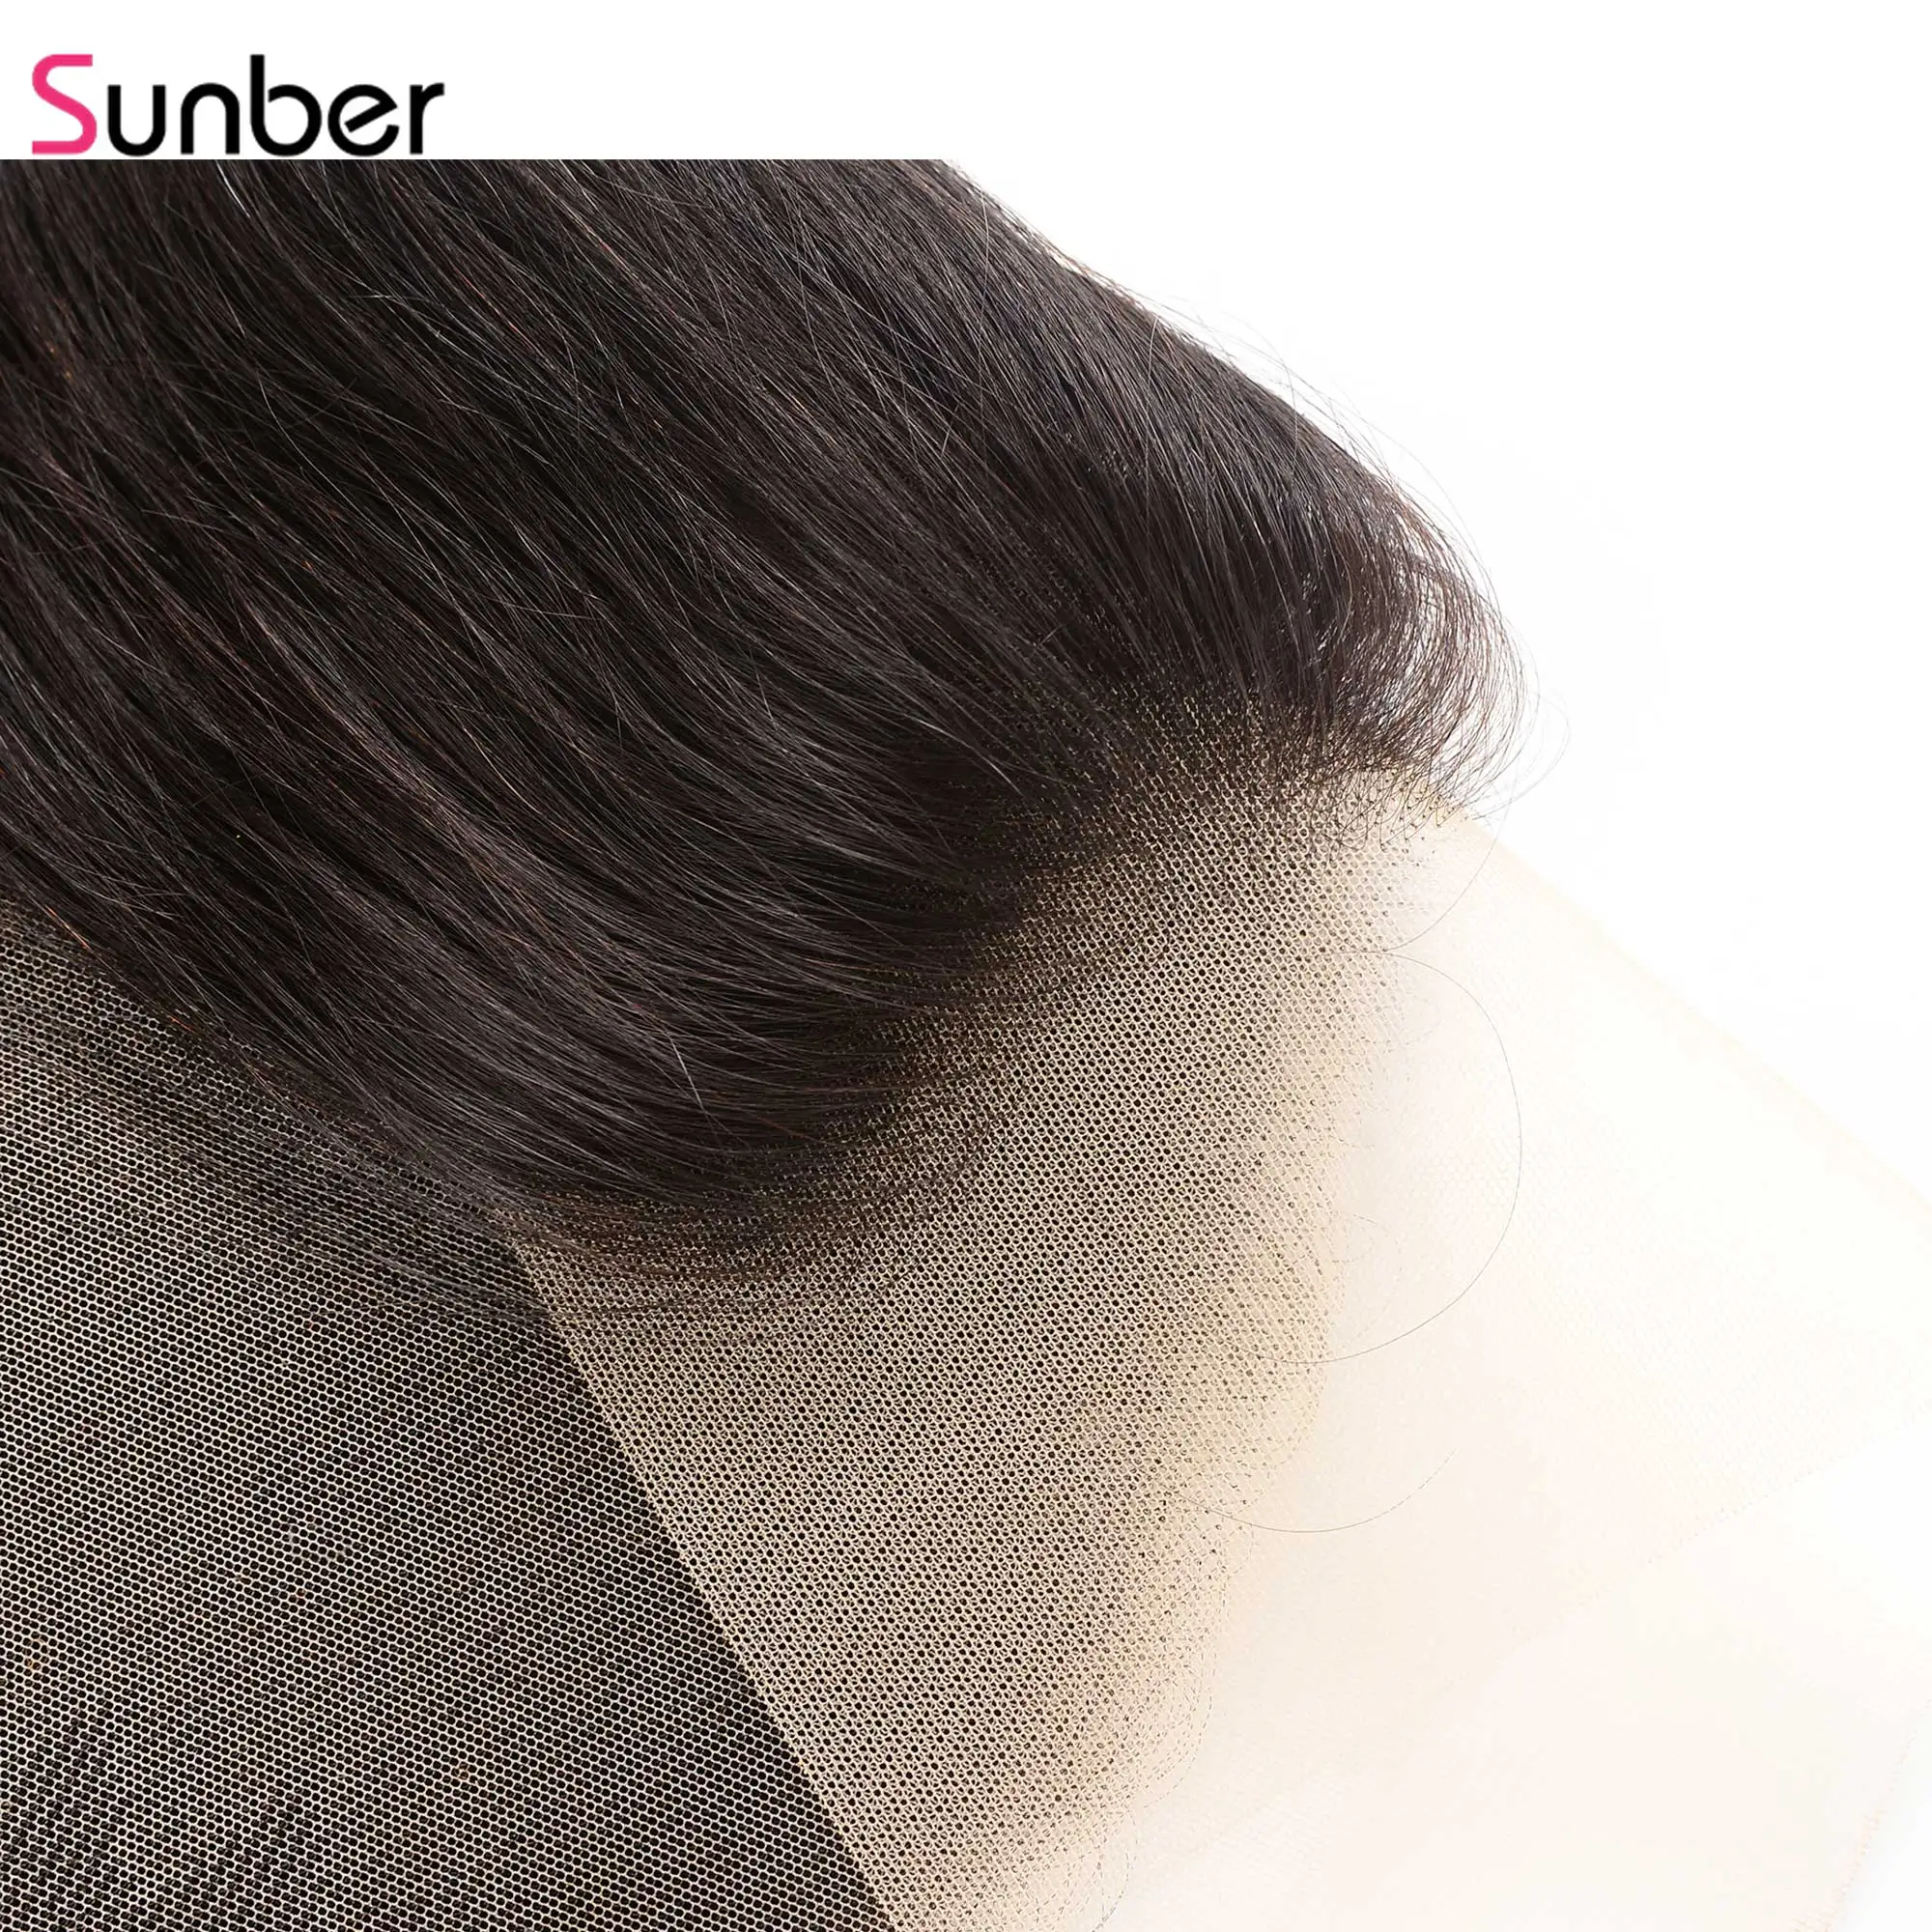 Sunber Hair13x6 transaprise фронтальные прямые волосы Человеческие волосы remy на ухо кружева закрытие перуанские волосы